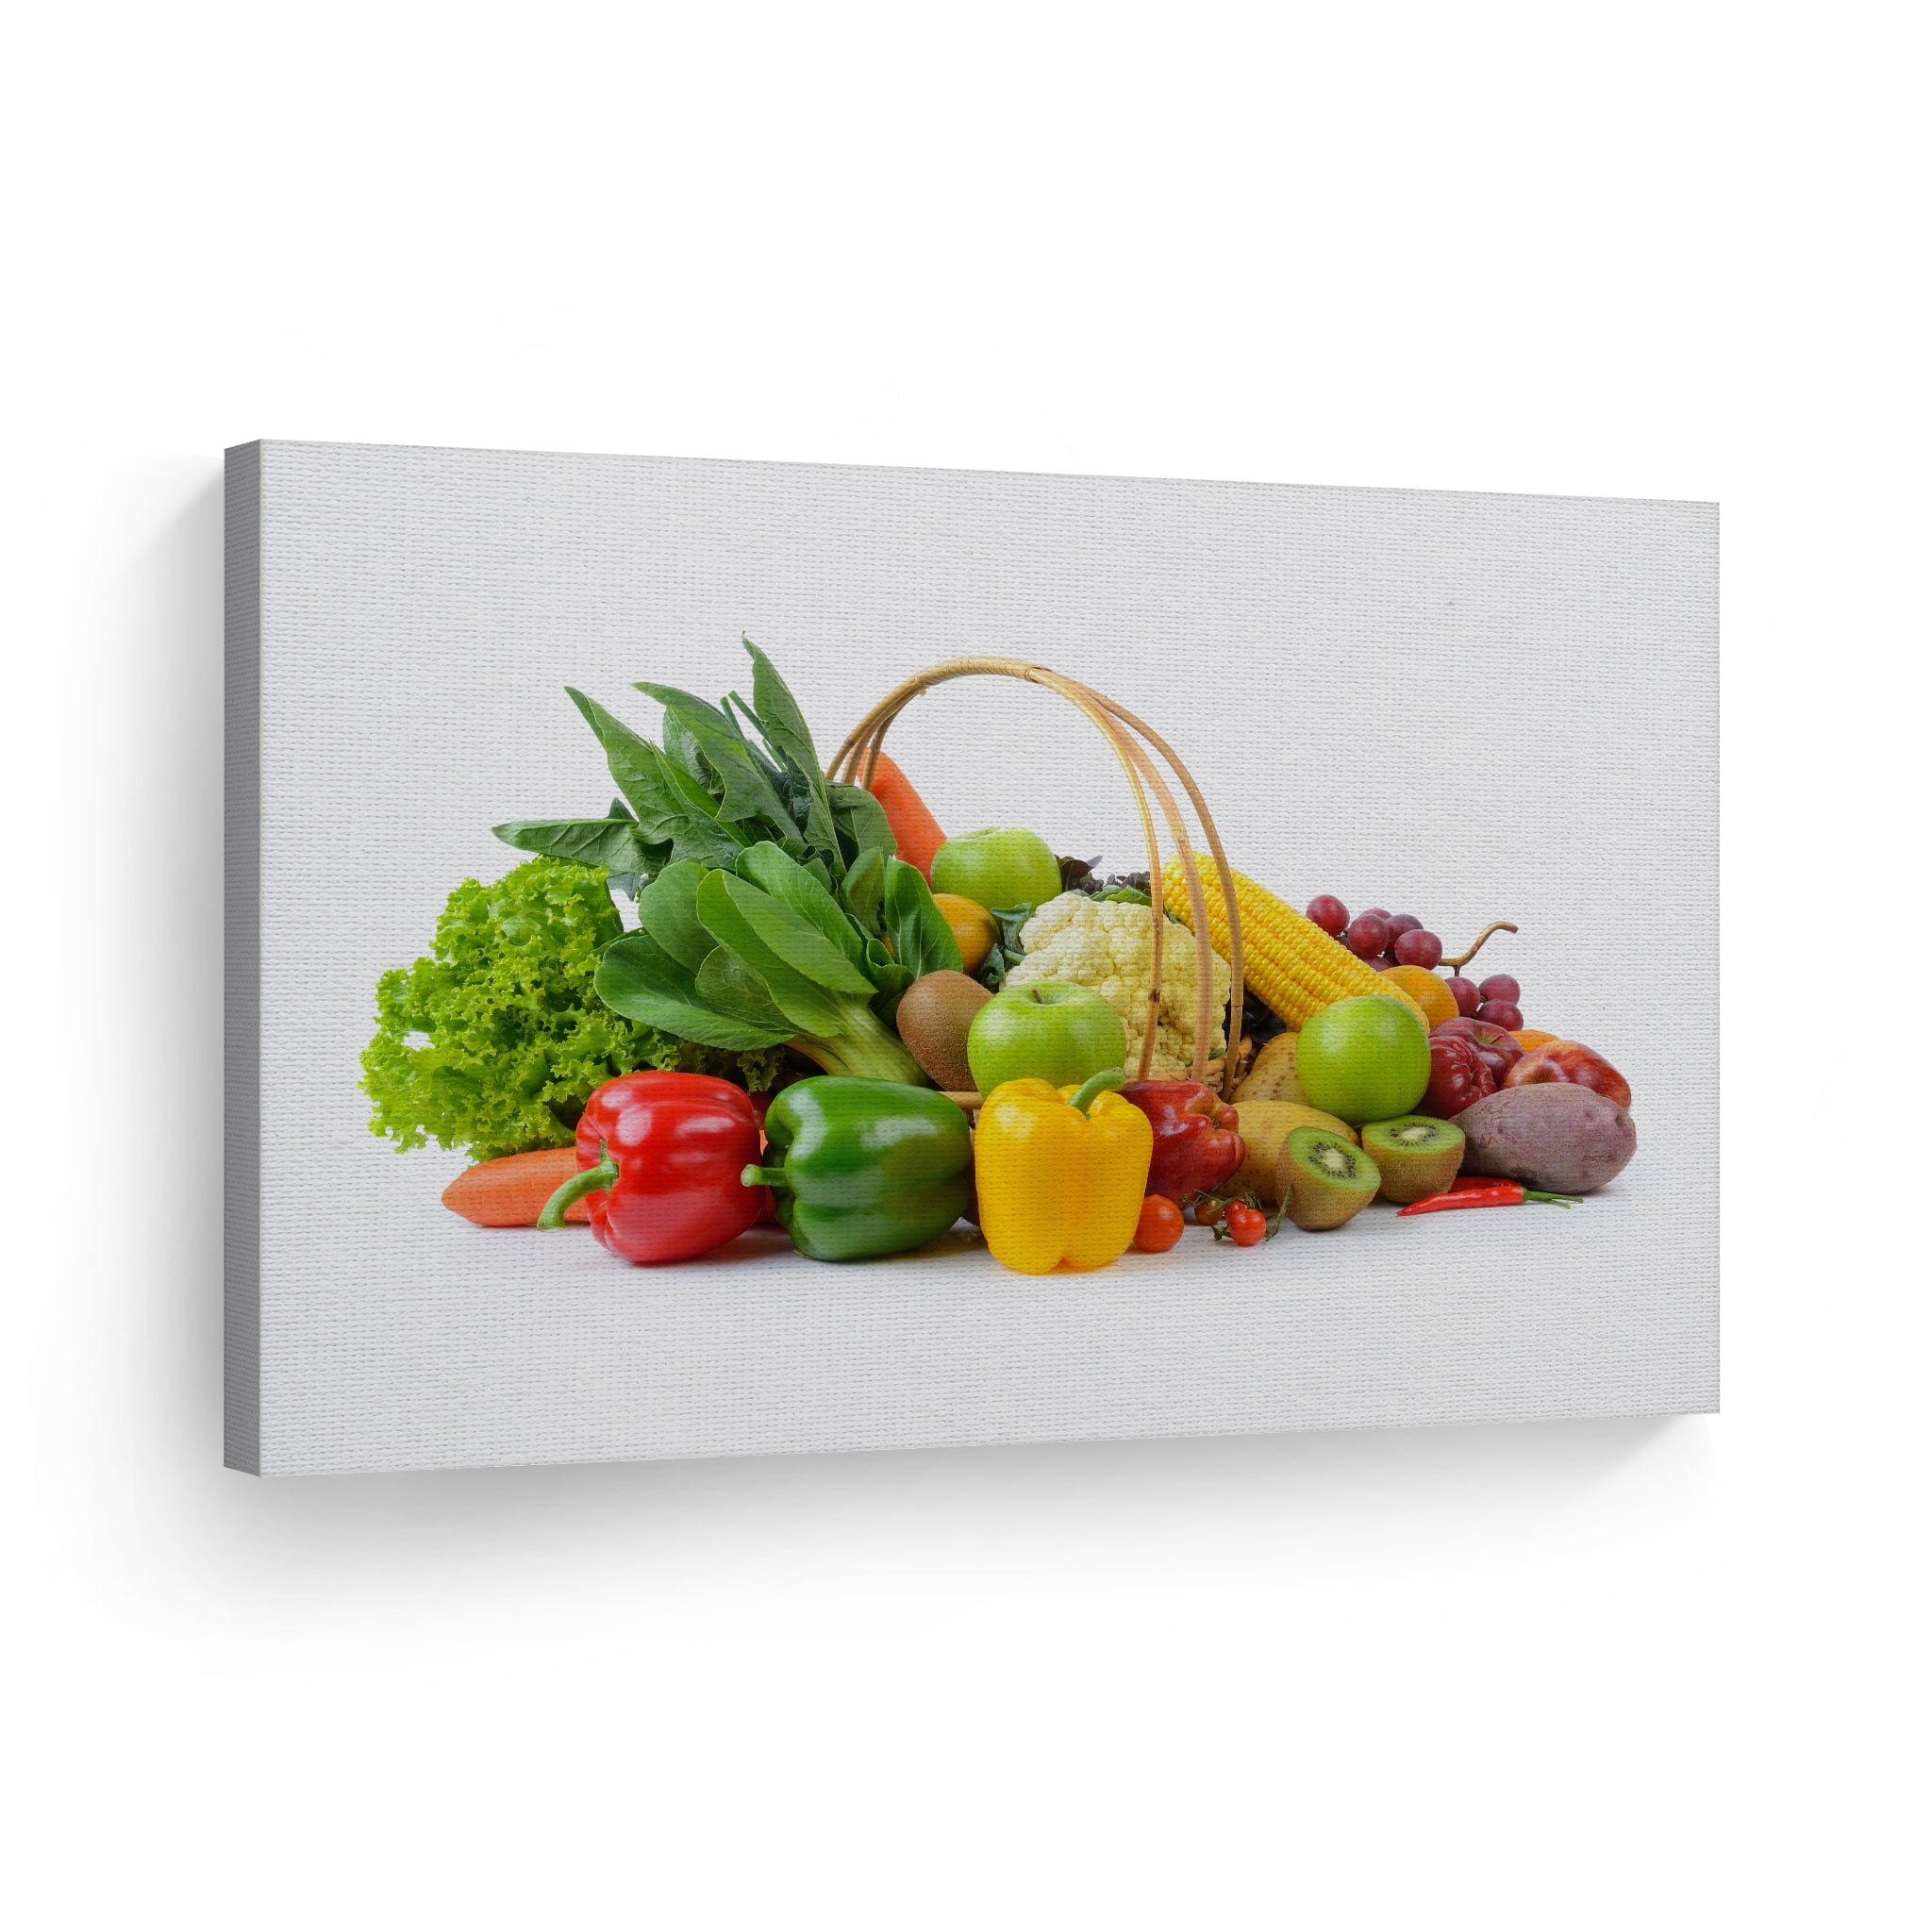 Smile Art Design Colorful Vegetables and Fruits Basket Kitchen Canvas ...